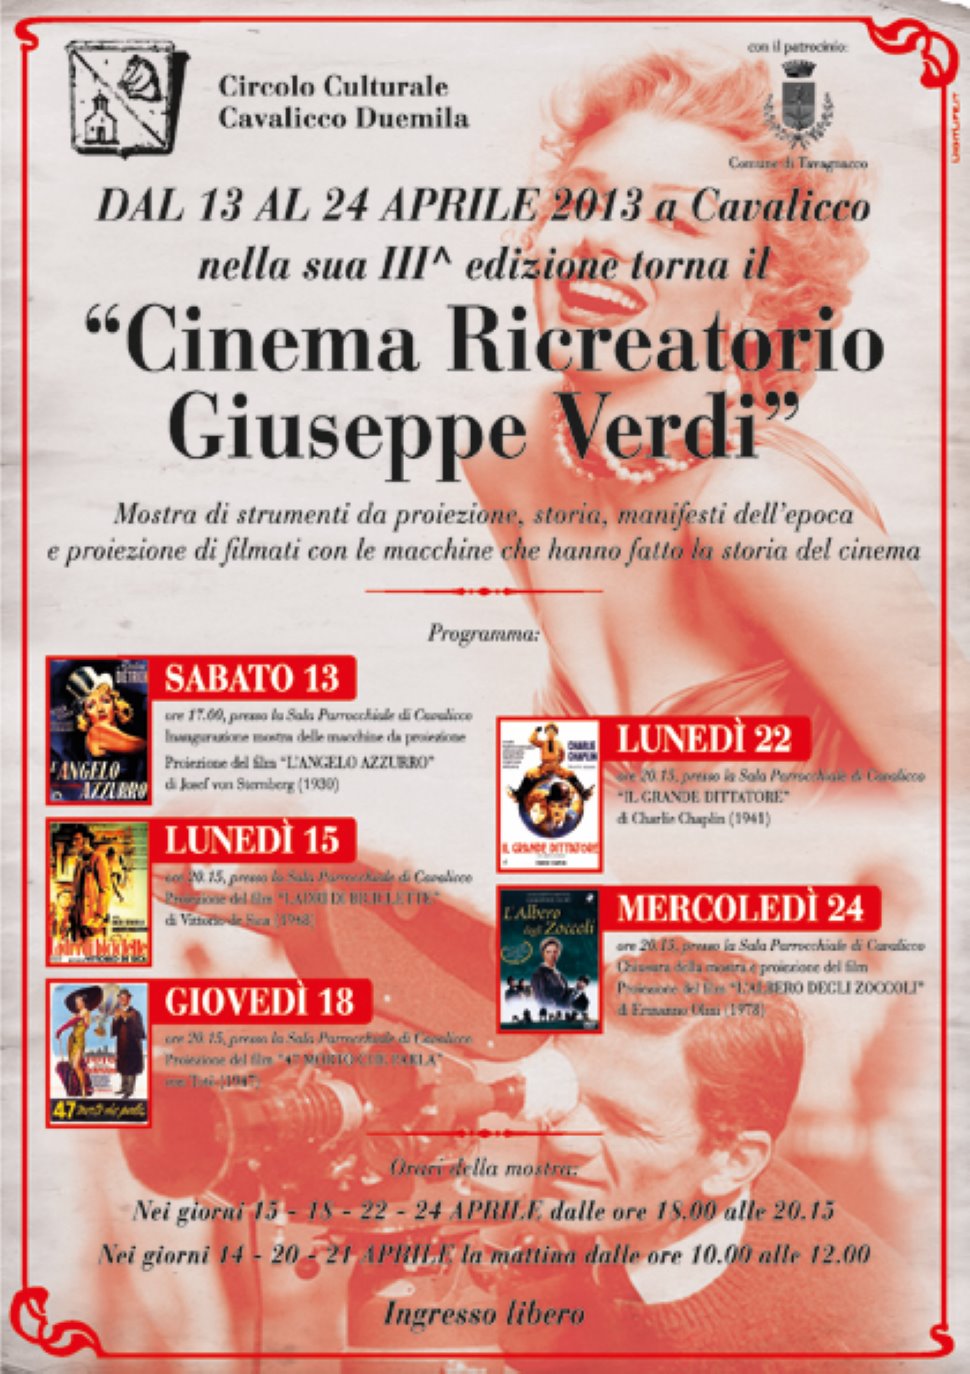 III° edizione "CINEMA RICREATORIO Giuseppe Verdi"